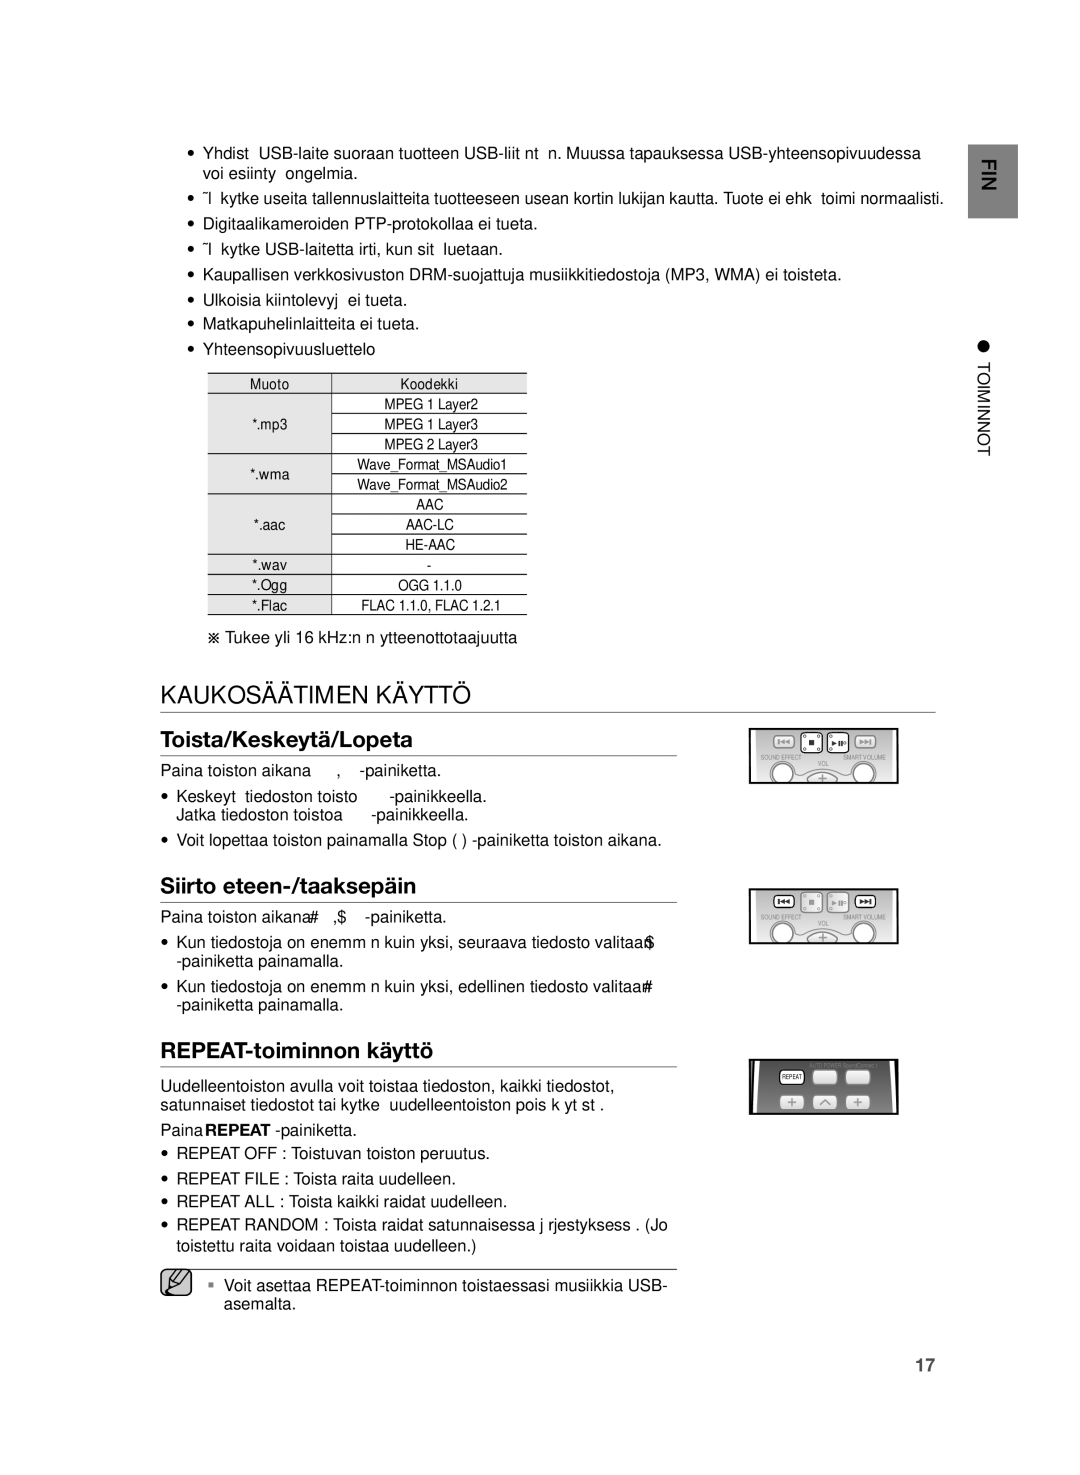 Samsung HW-H355/XE manual Kaukosäätimen Käyttö, Toista/Keskeytä/Lopeta, Siirto eteen-/taaksepäin, REPEAT-toiminnon käyttö 